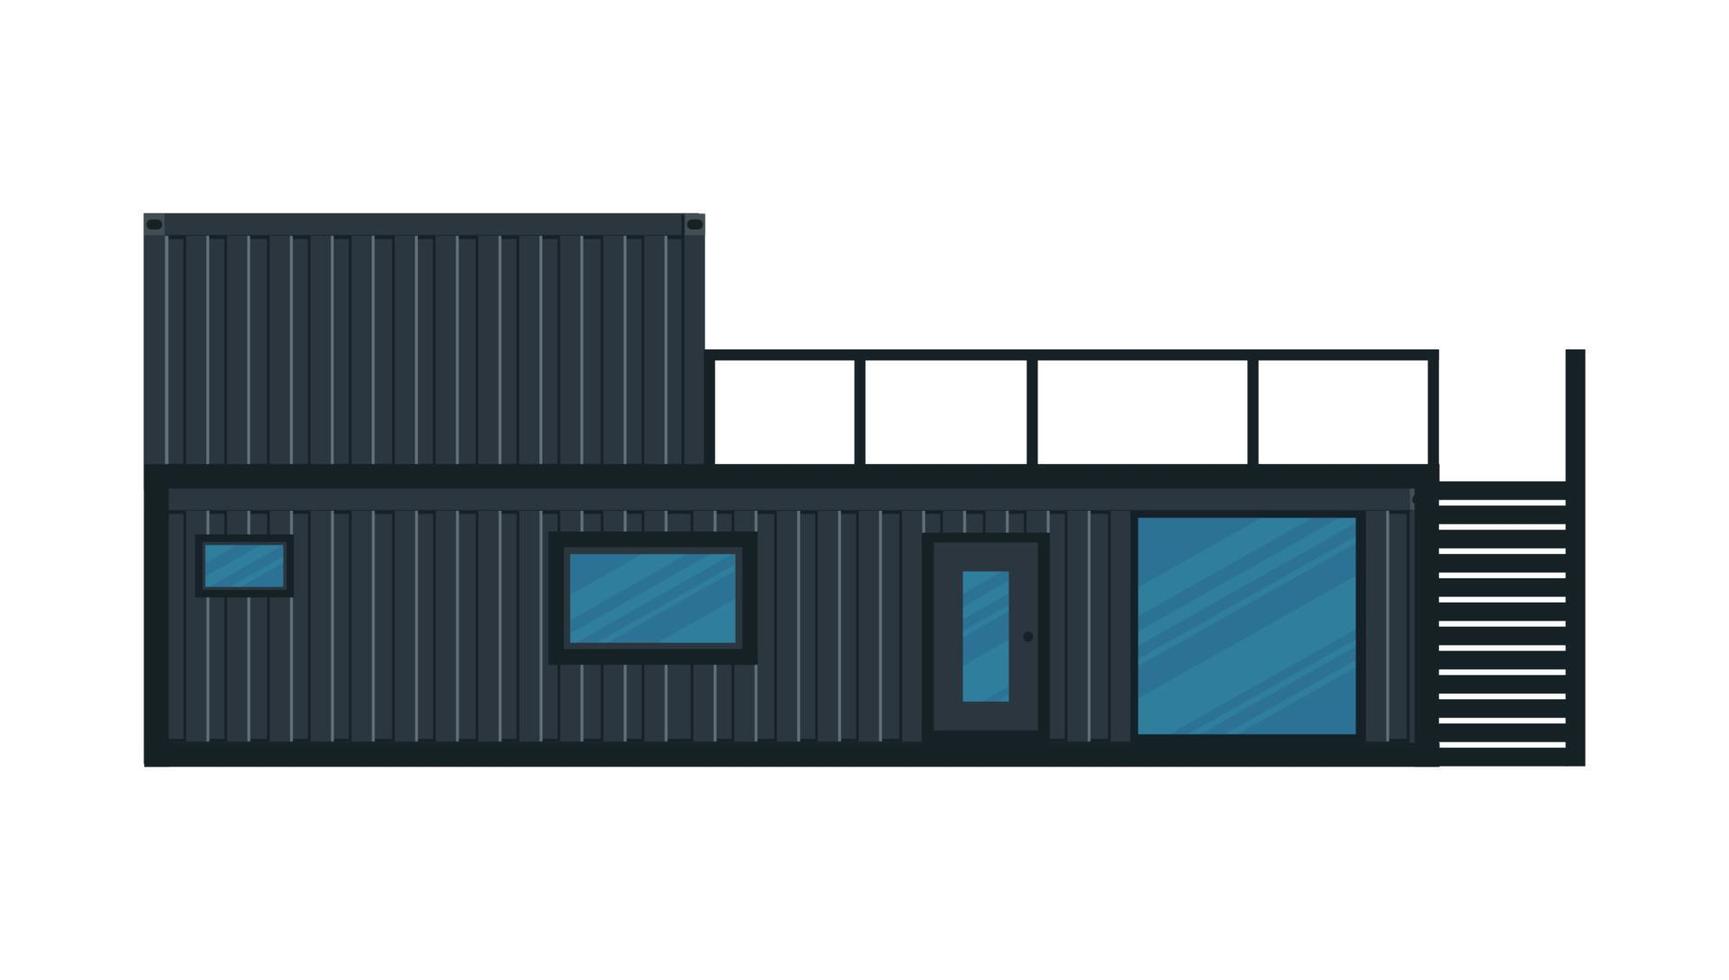 huis, café van zwarte vrachtcontainer. gebouw met twee verdiepingen met een veranda uit container voor schip geïsoleerd op een witte achtergrond. vectorillustratie. vector